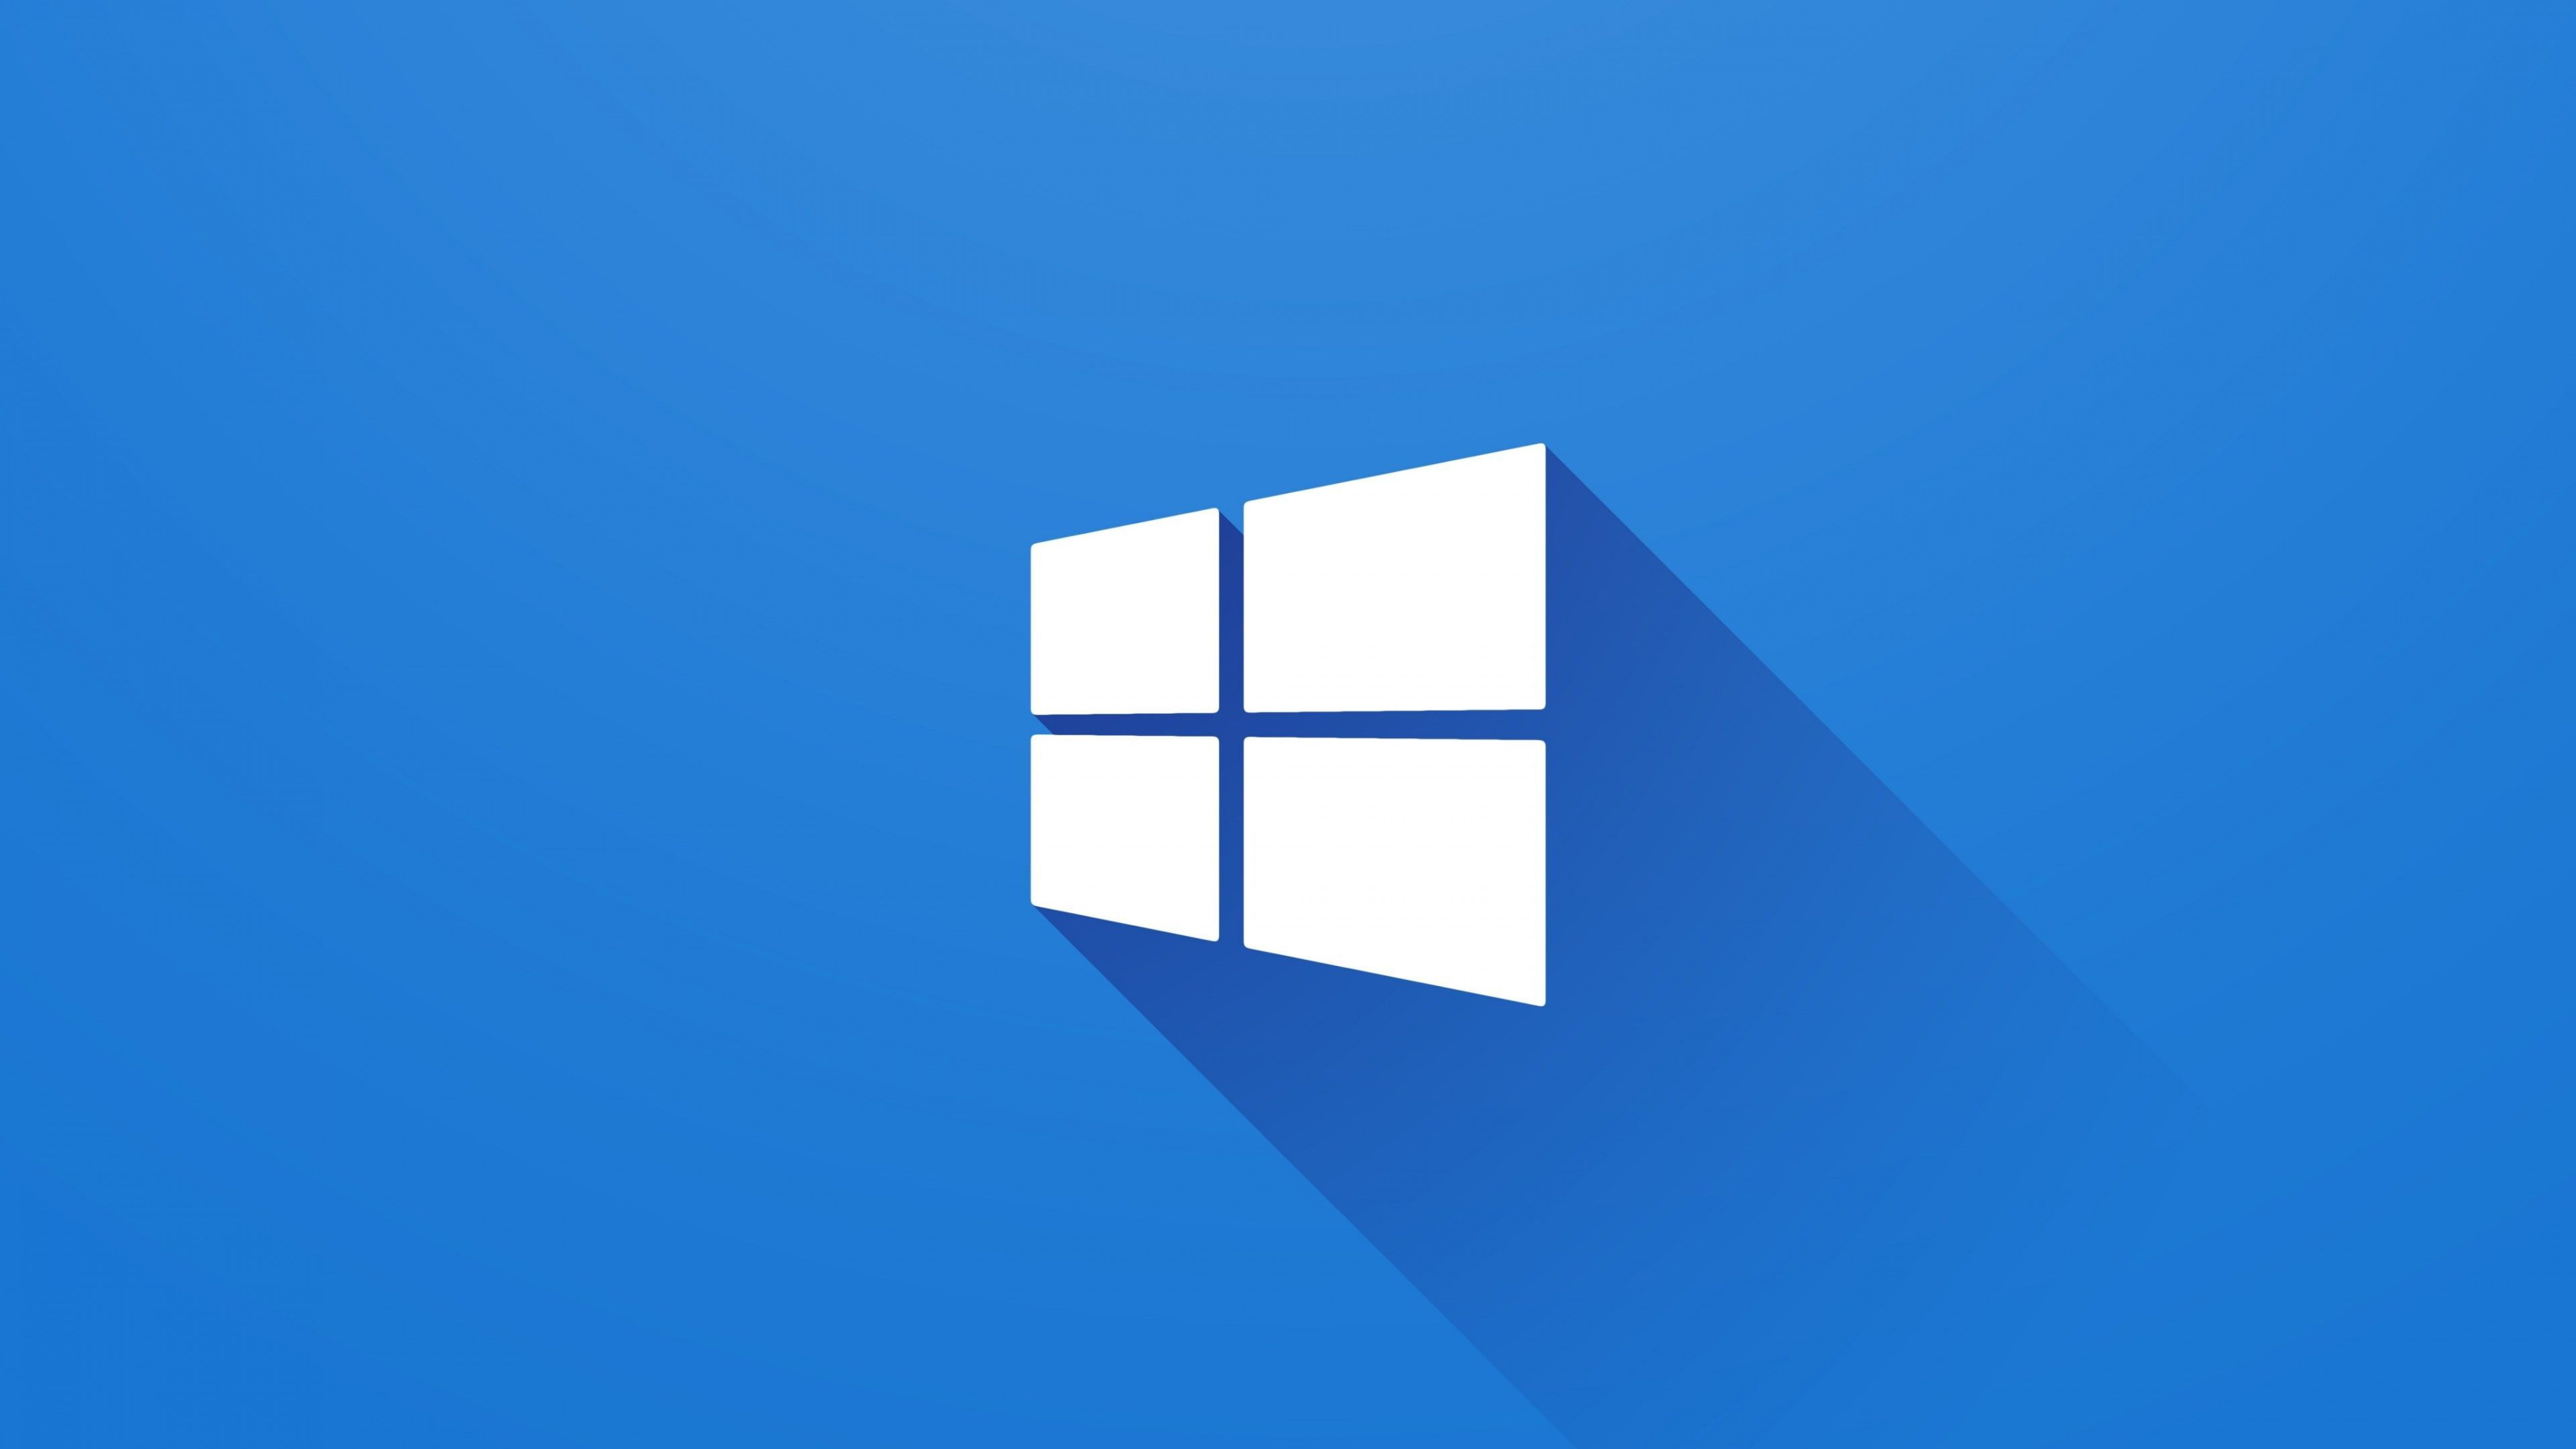 Logo Windows: Đảm bảo mọi người đều biết đến hệ điều hành Windows, logo Windows đã là một biểu tượng quen thuộc với nhiều người dùng. Hãy xem ngay bức ảnh về logo Windows để cảm nhận sự độc đáo và tinh tế của nó. Với thiết kế đơn giản nhưng hiện đại, logo Windows là một phần không thể thiếu trong máy tính của bạn!